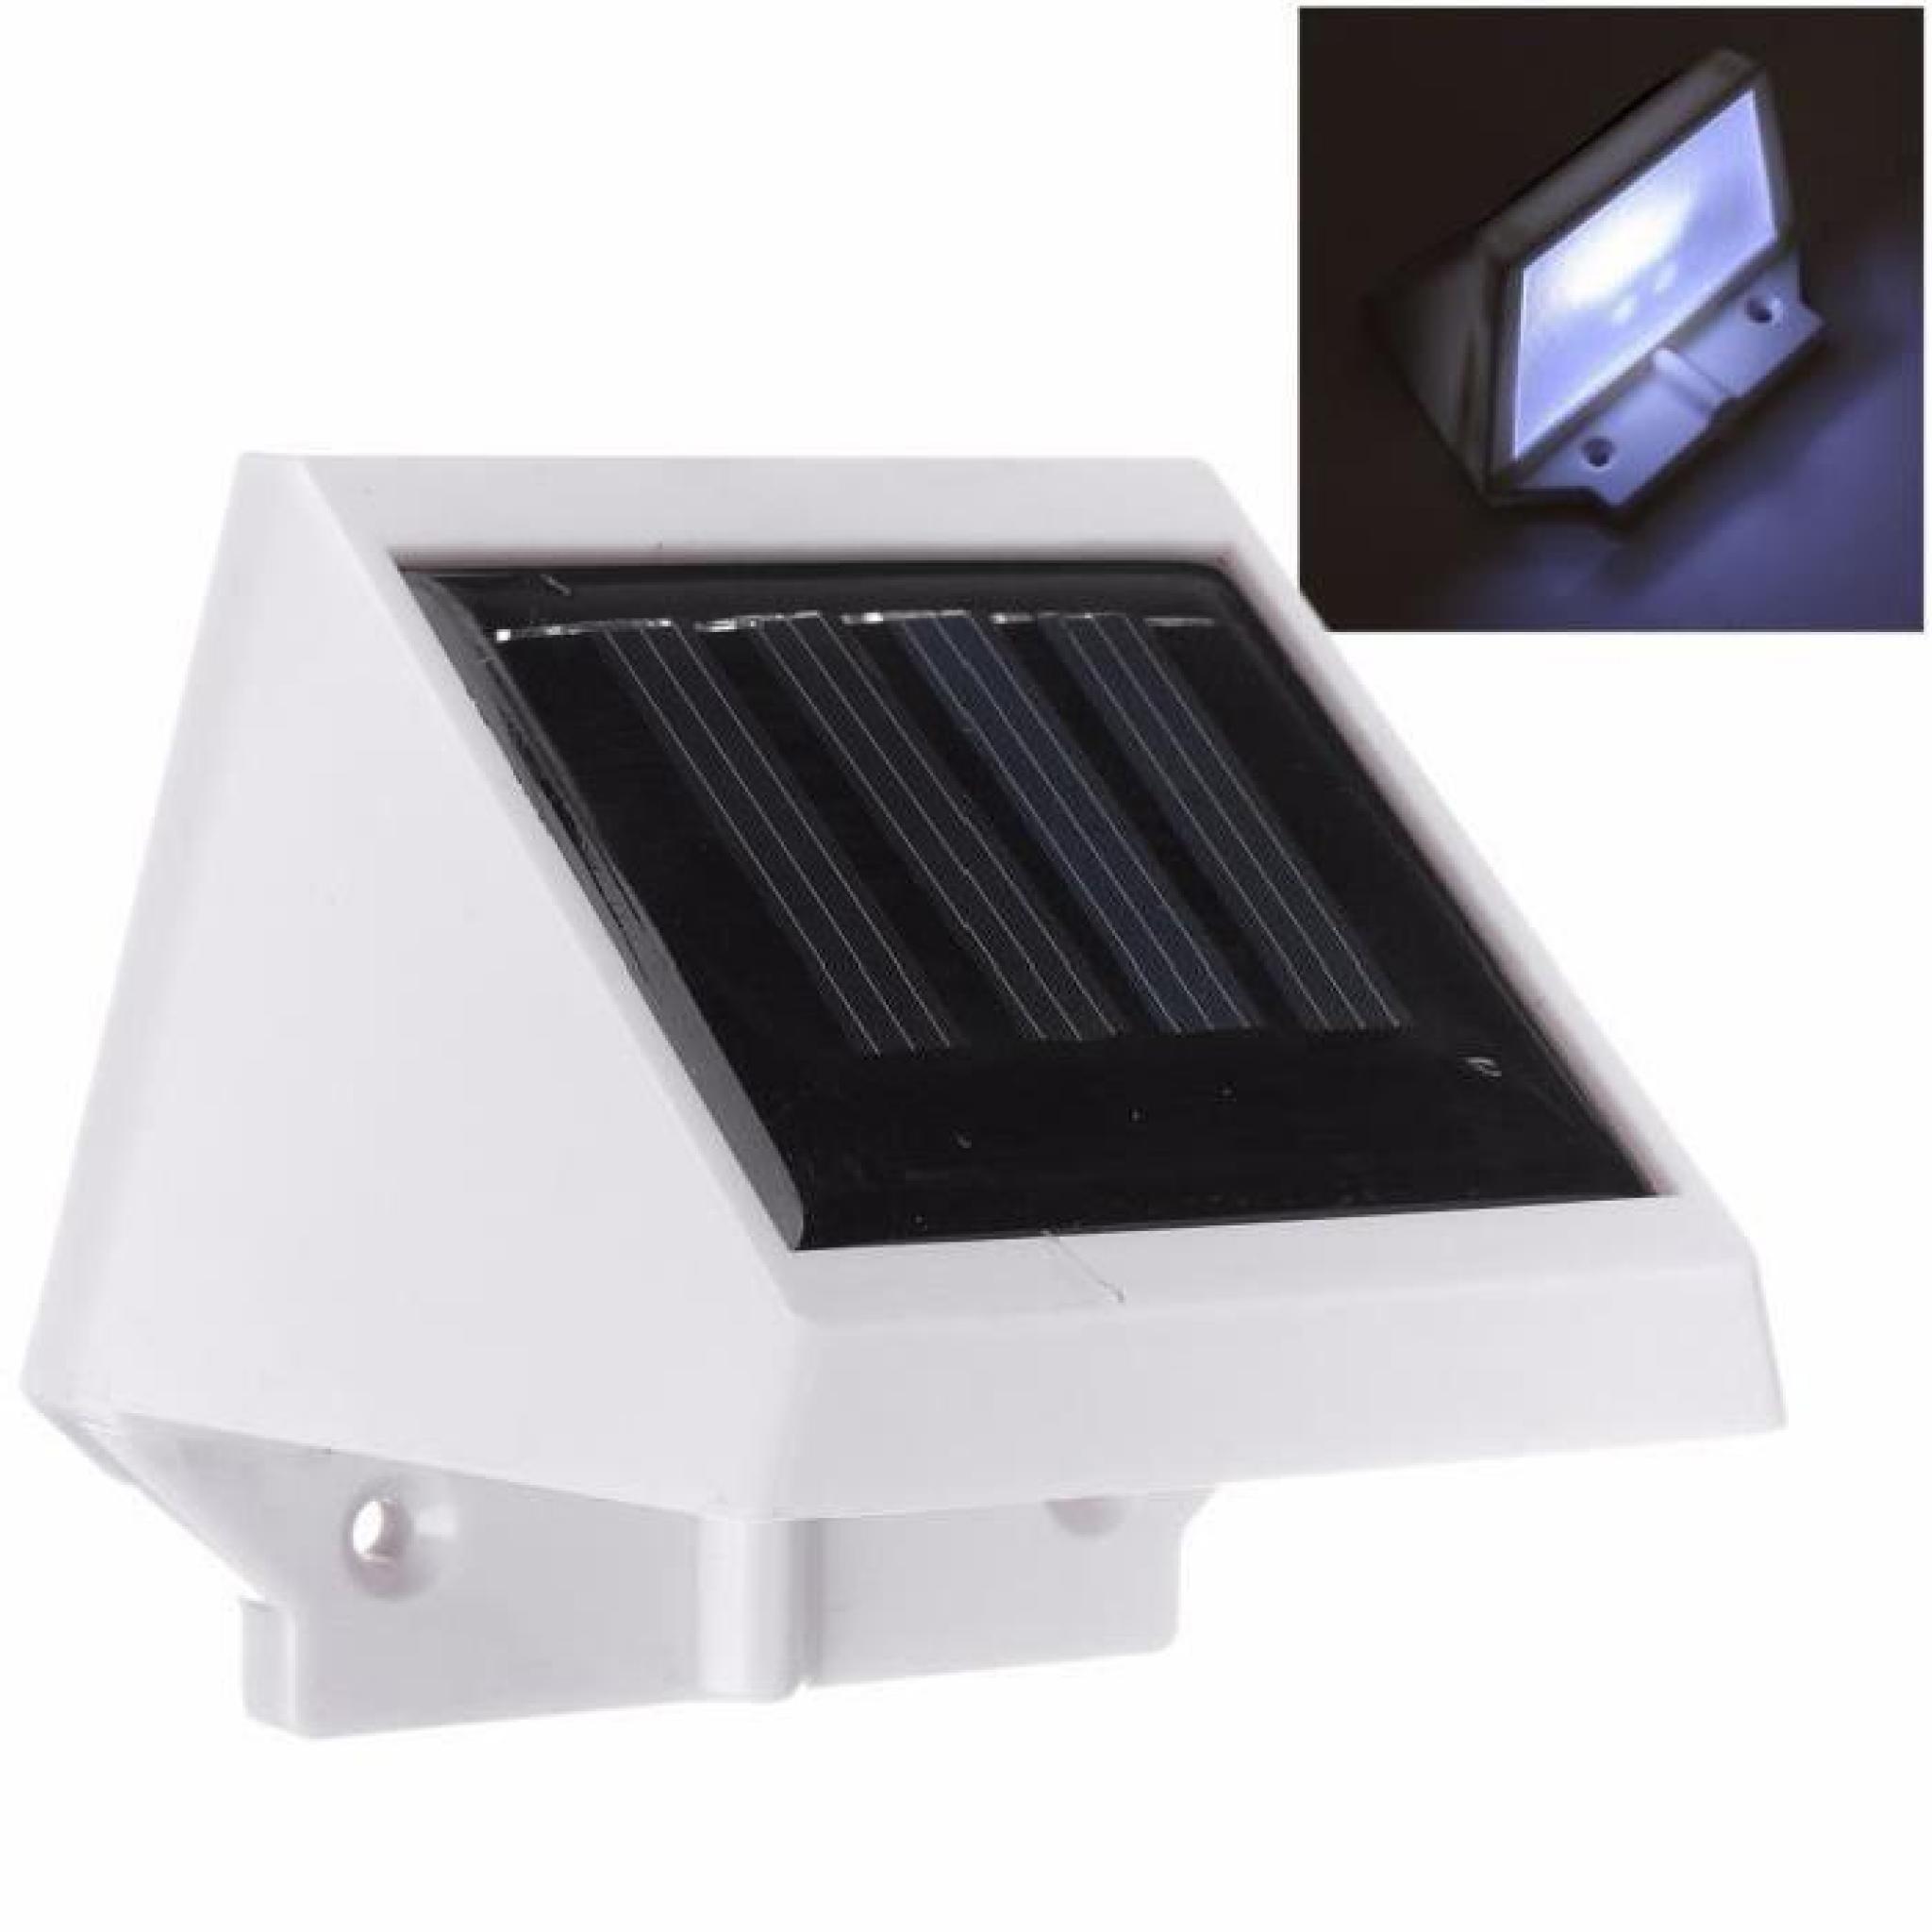 2 LED Lumière Solaire Capteur Détecteur de Mouvement Escalier Jardin Extérieur Mur Blanc chaud